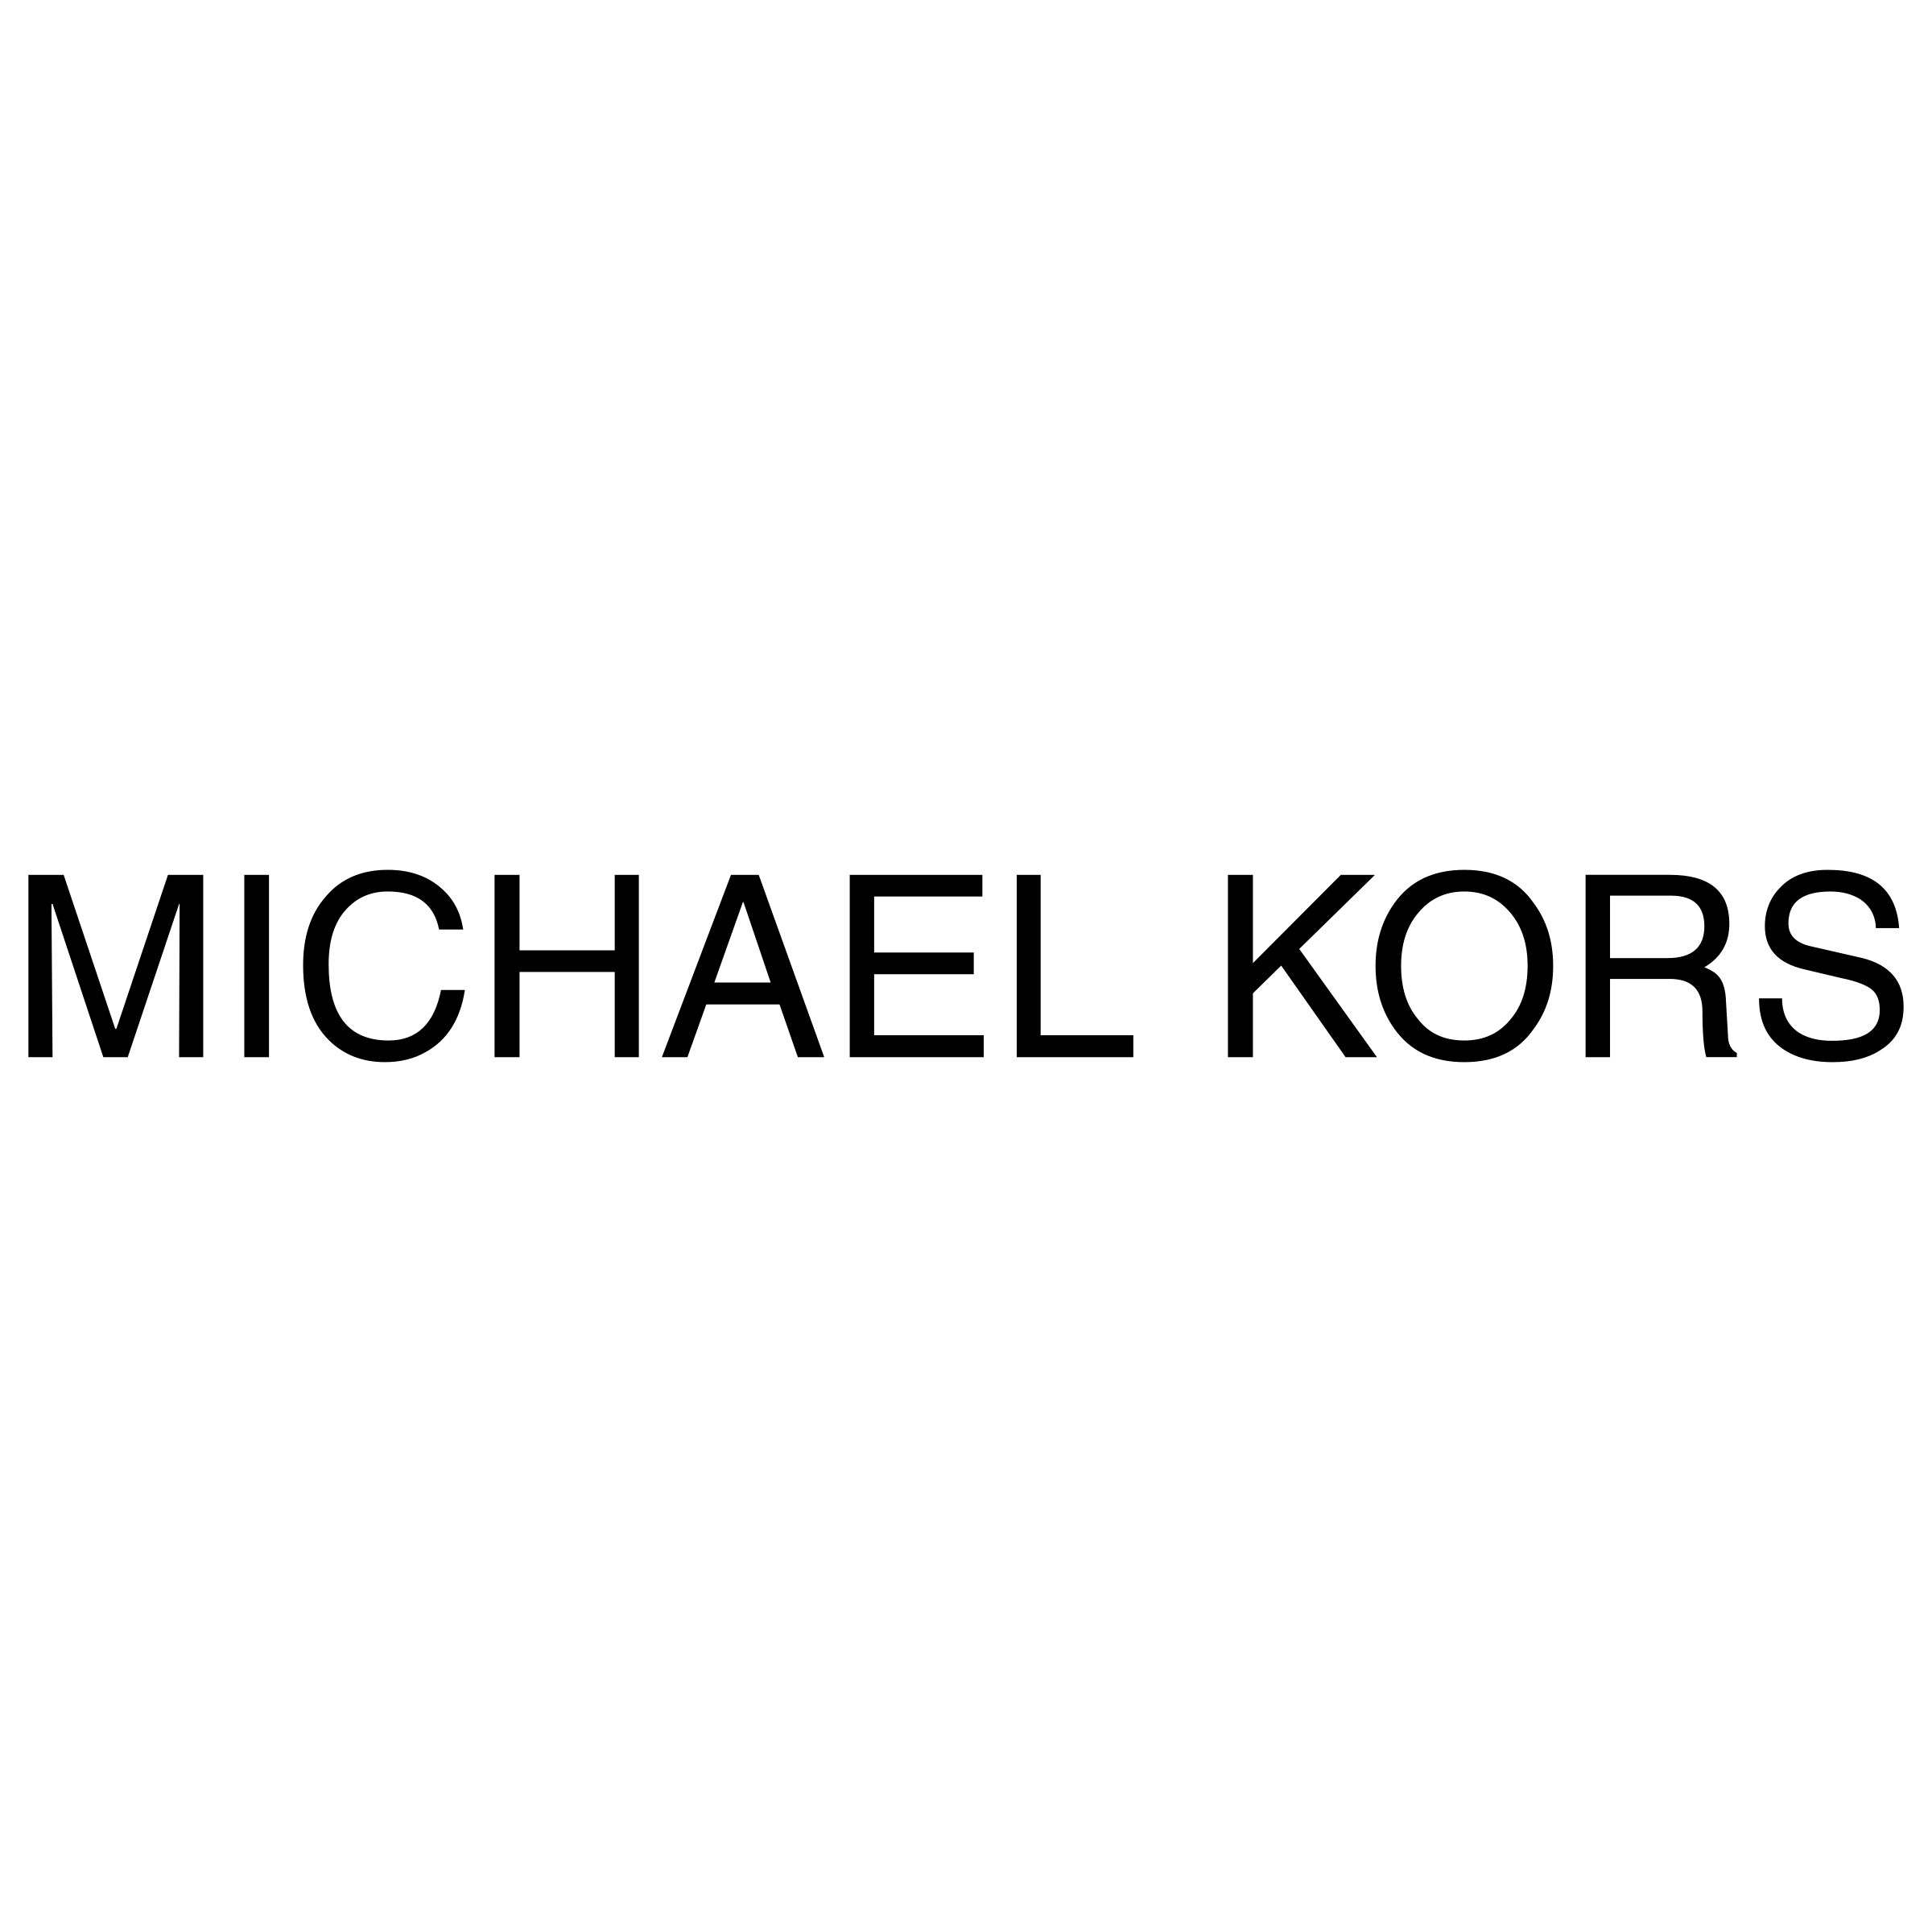 Michael Kors logo transparent PNG  StickPNG